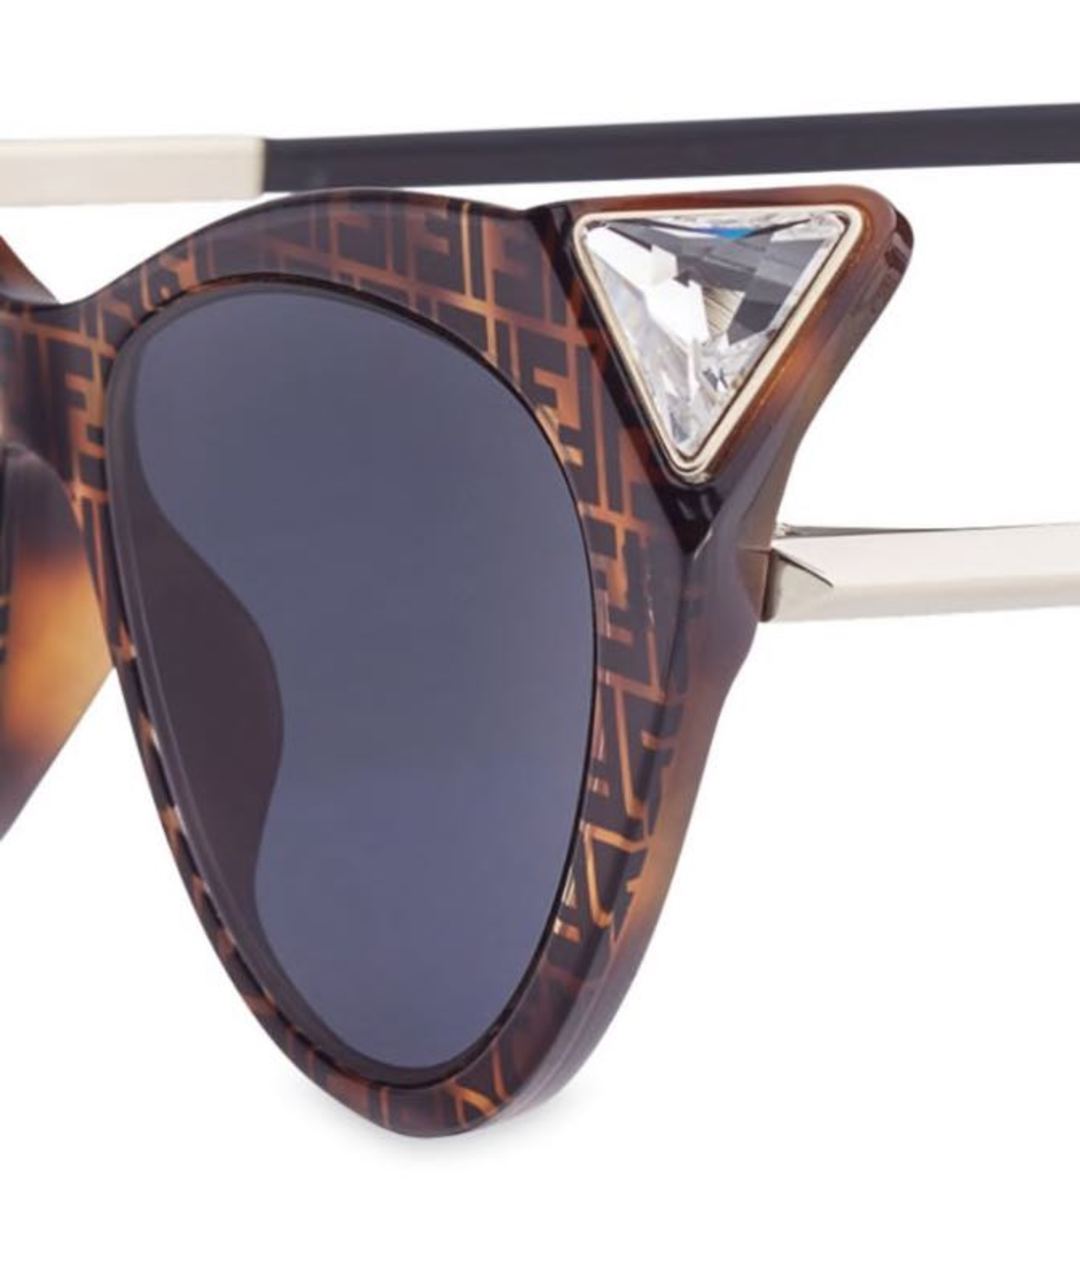 FENDI Коричневые пластиковые солнцезащитные очки, фото 3